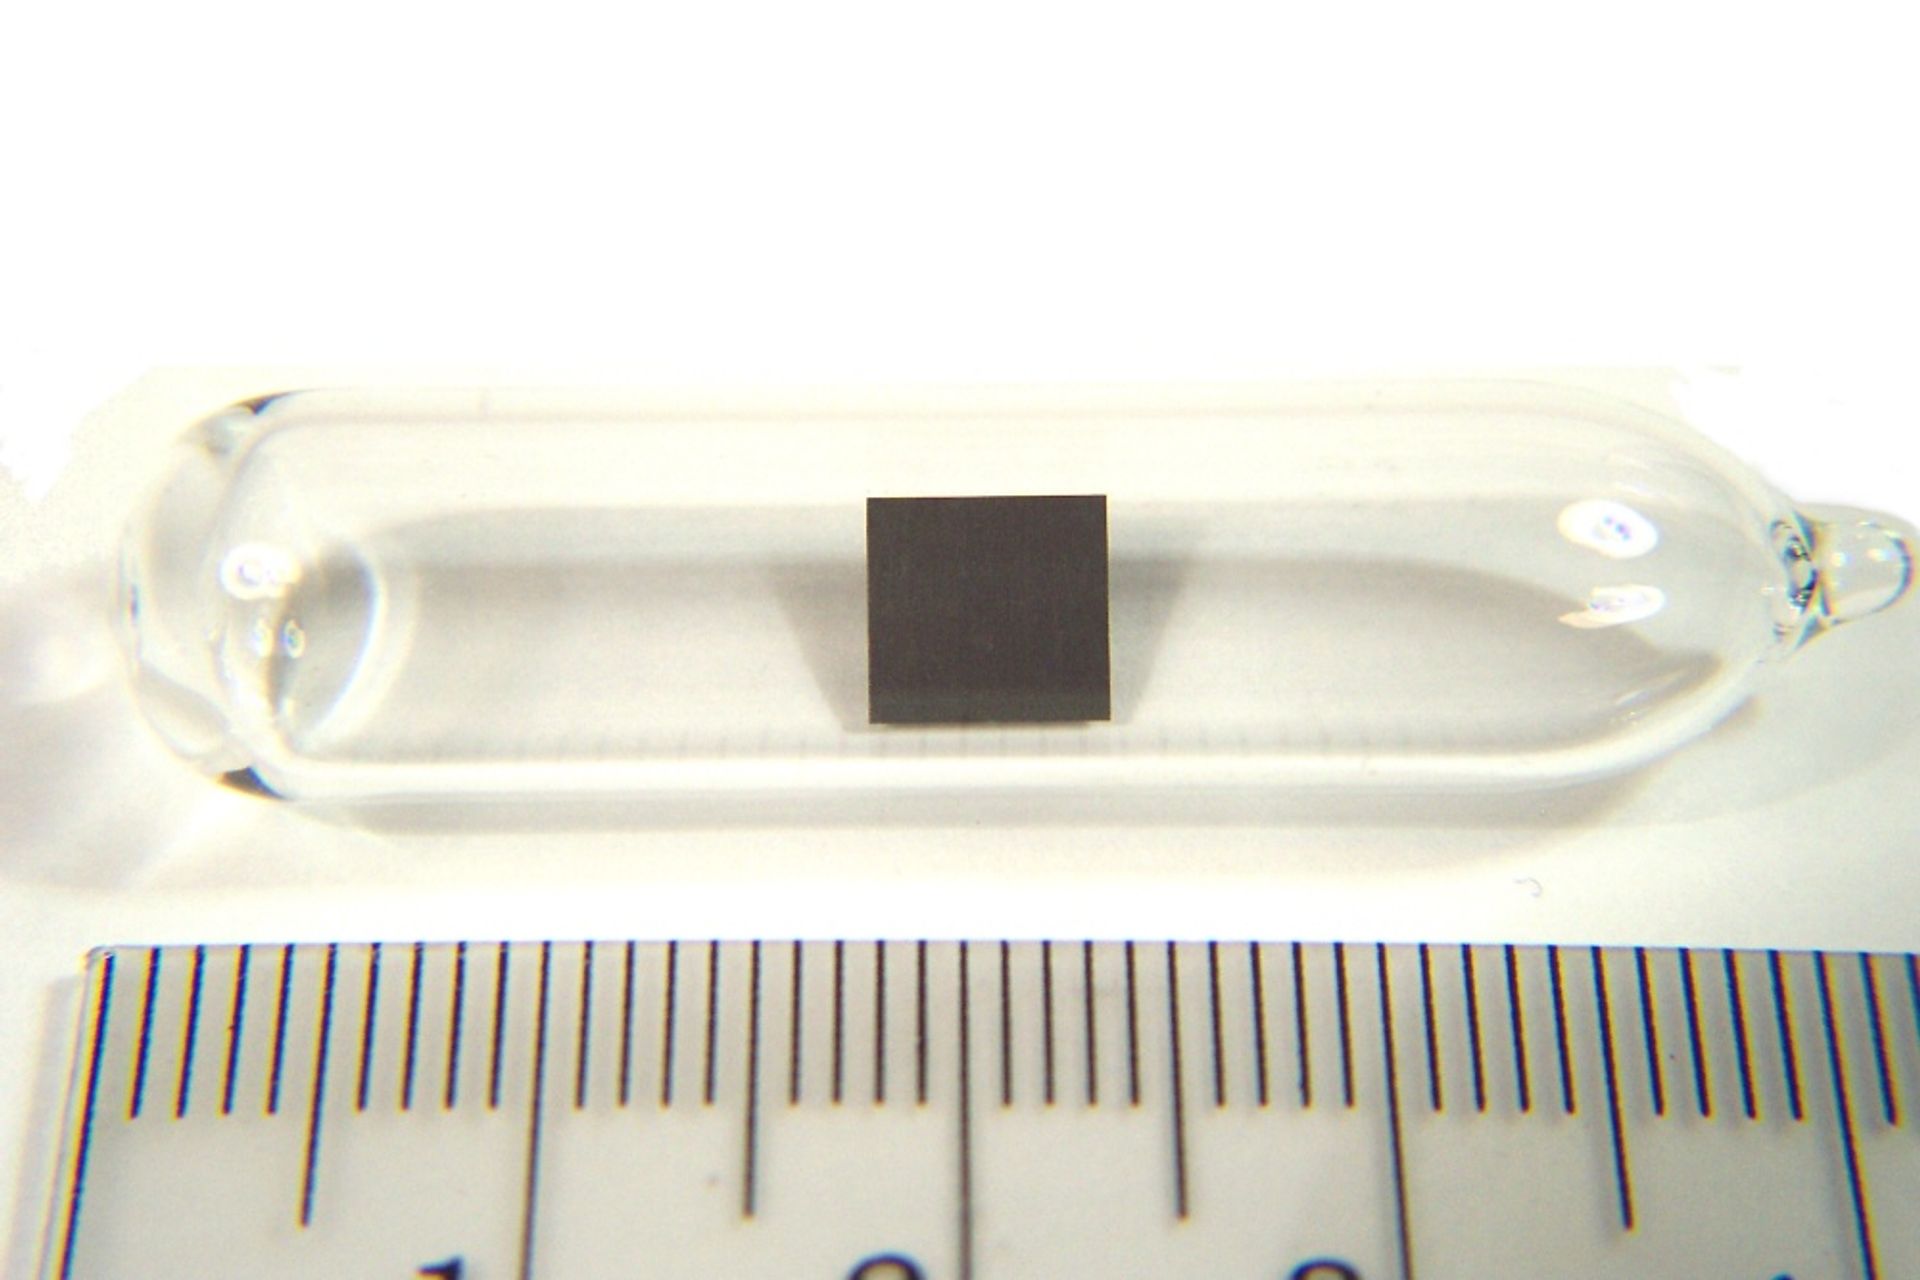 Ett prov av torium i form av ett tunt ark under argon i en glasampull